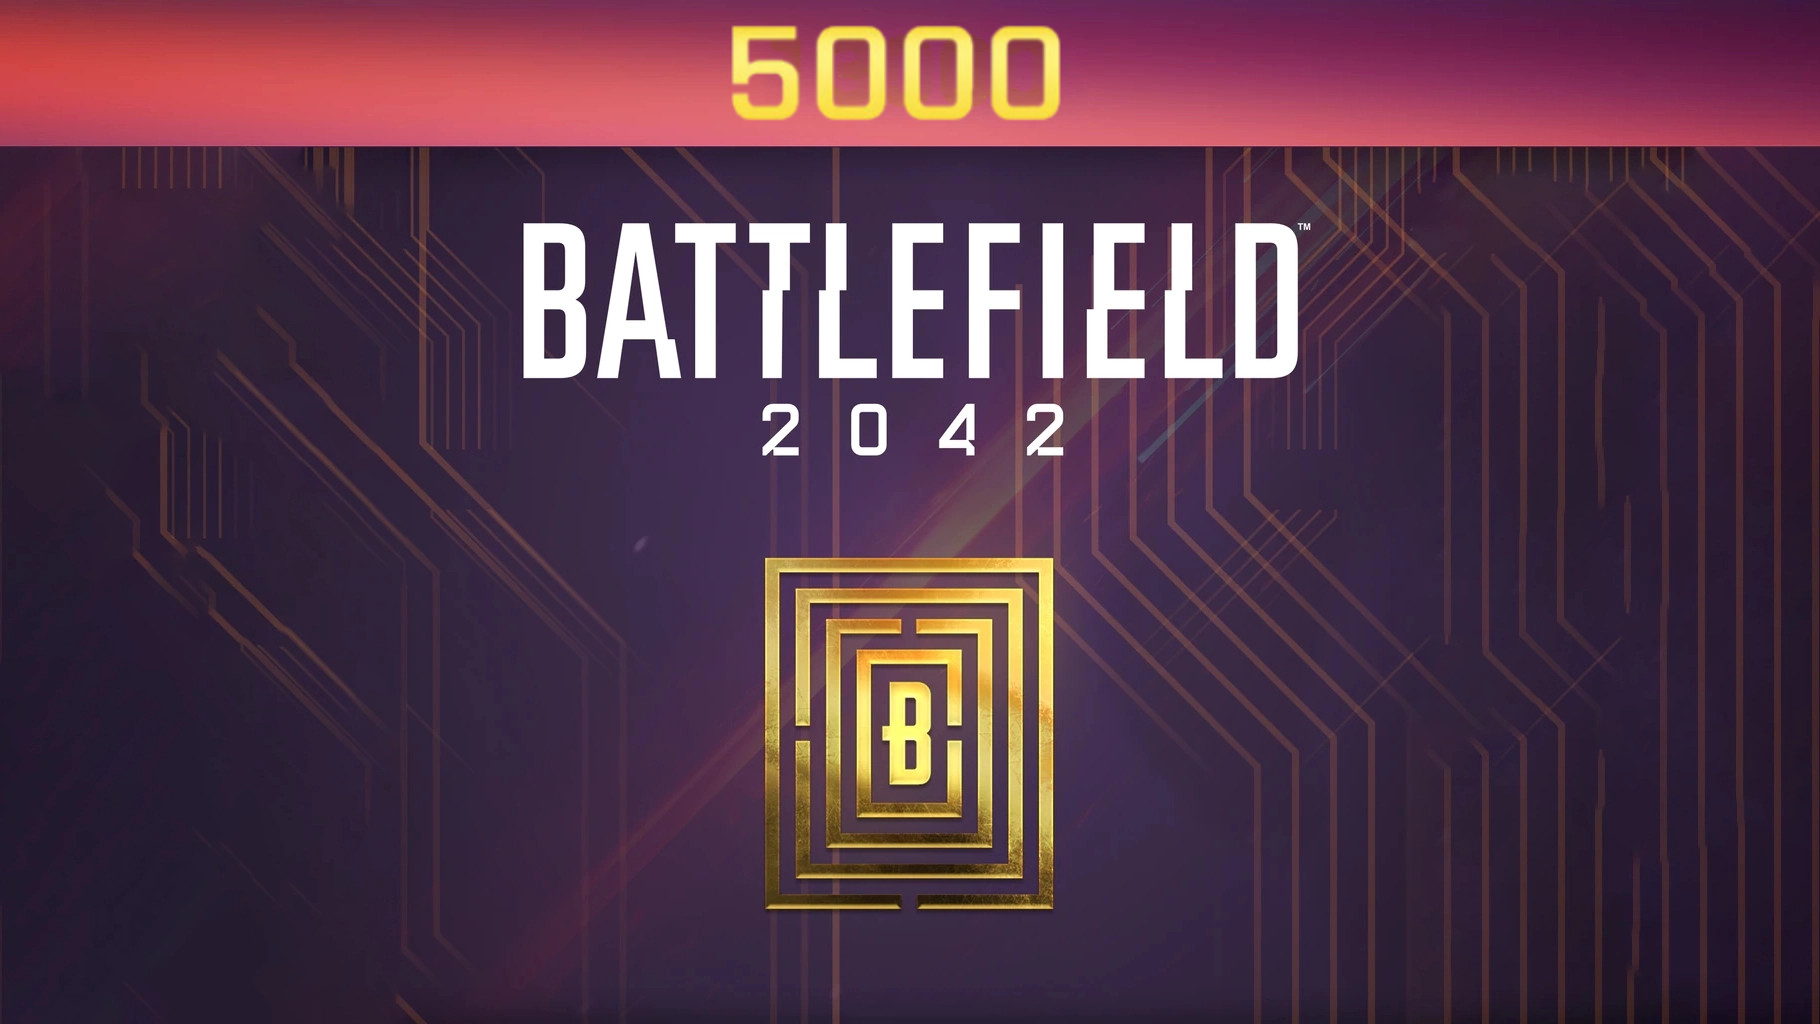 Battlefield 2042 - 5000 BFC Balance XBOX One / Xbox Series X|S CD Key [USD 40.67]